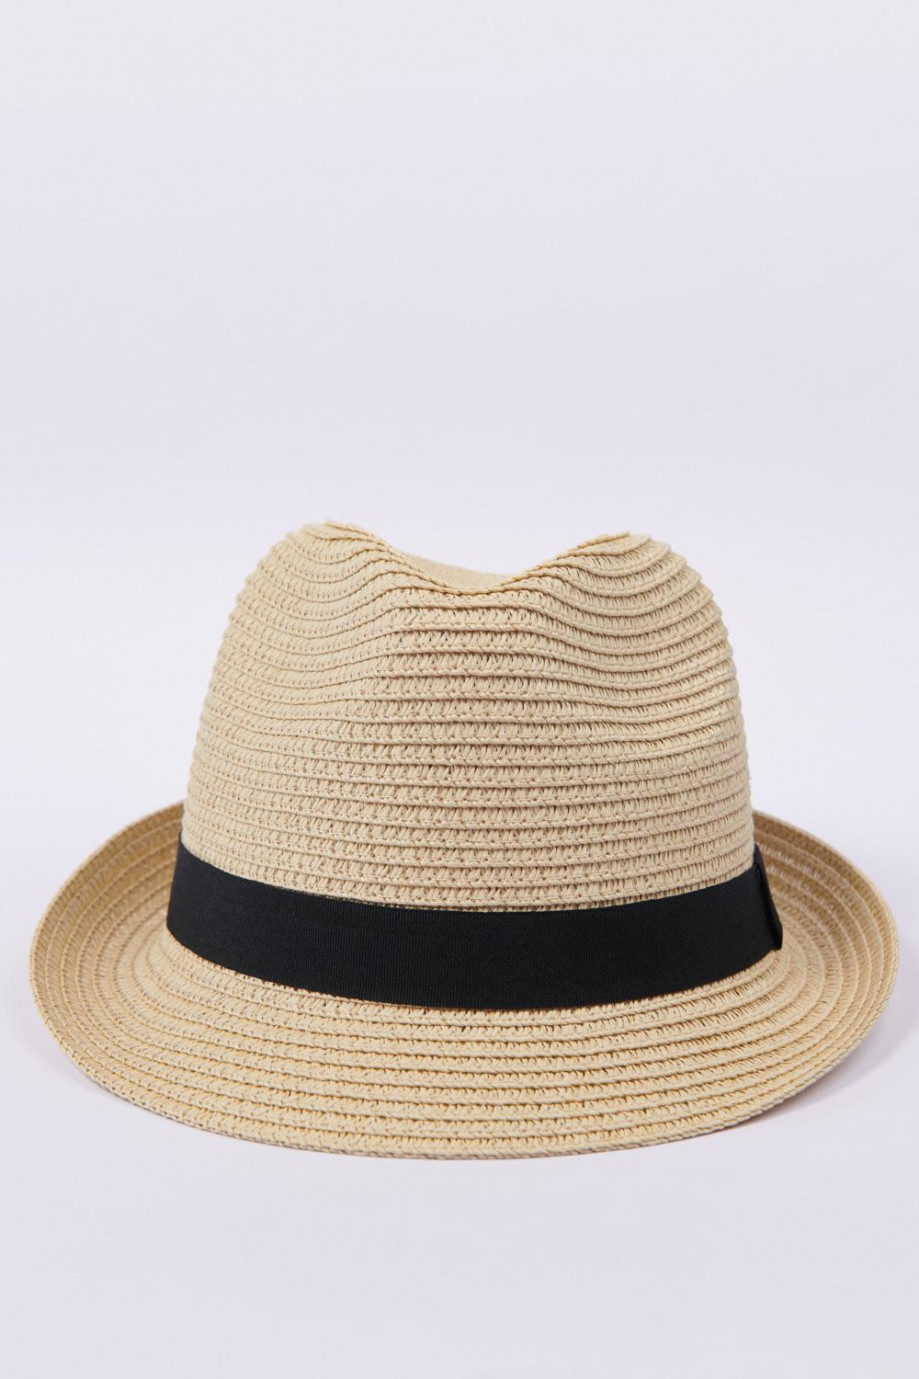 Sombrero crema claro con cinta decorativa negra y ala corta